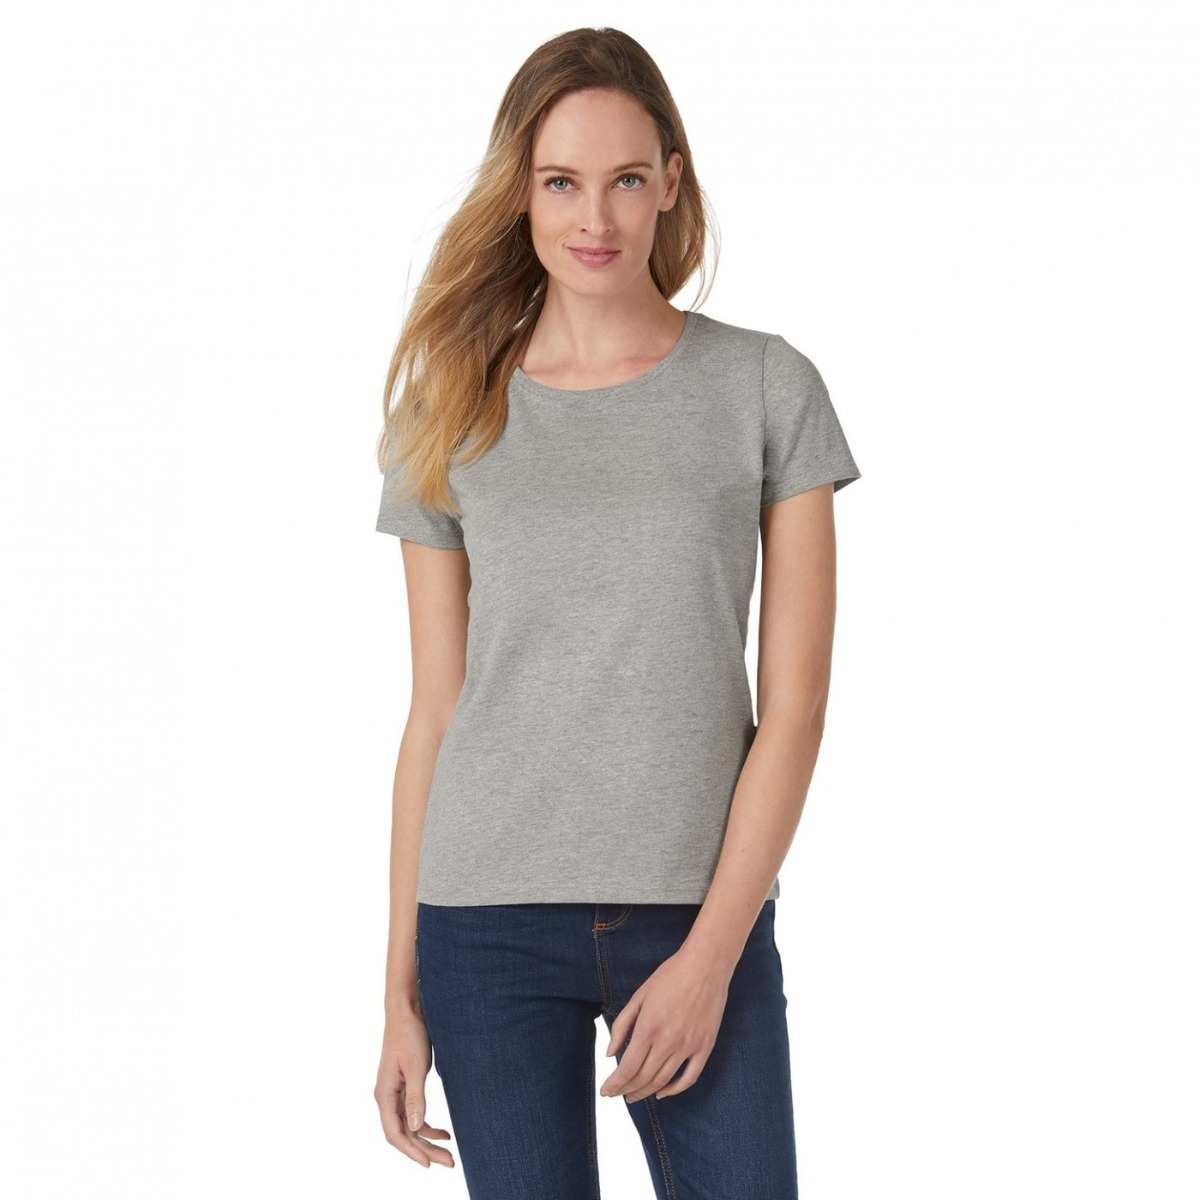 T-shirt manches longues femme #E190 - B&c